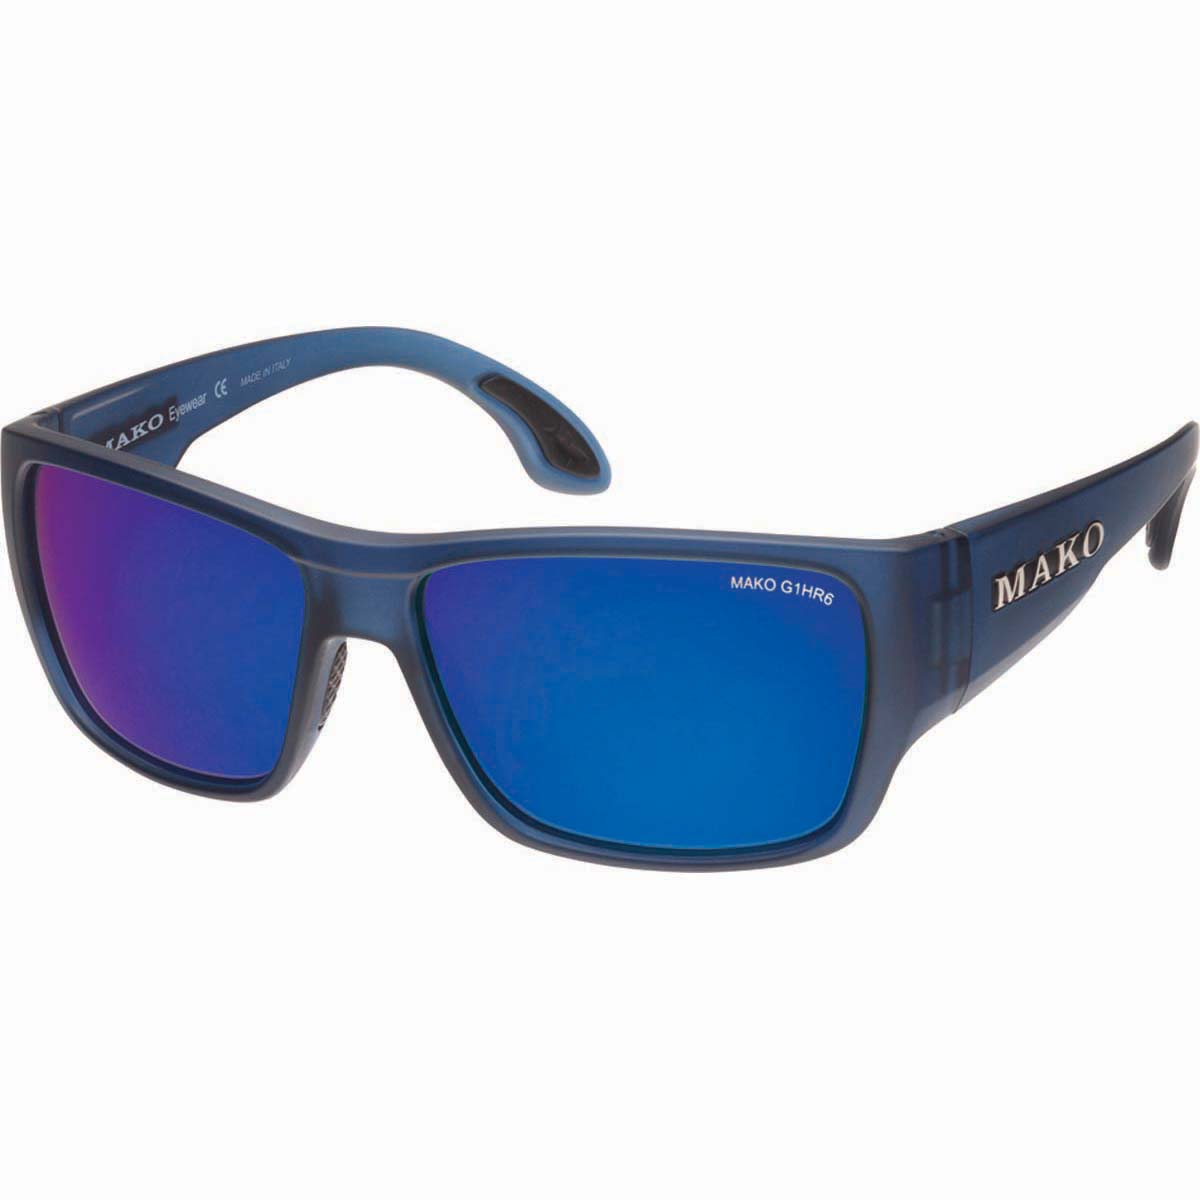 Mako Unisex Covert Sunglasses Grey Lens Bcf